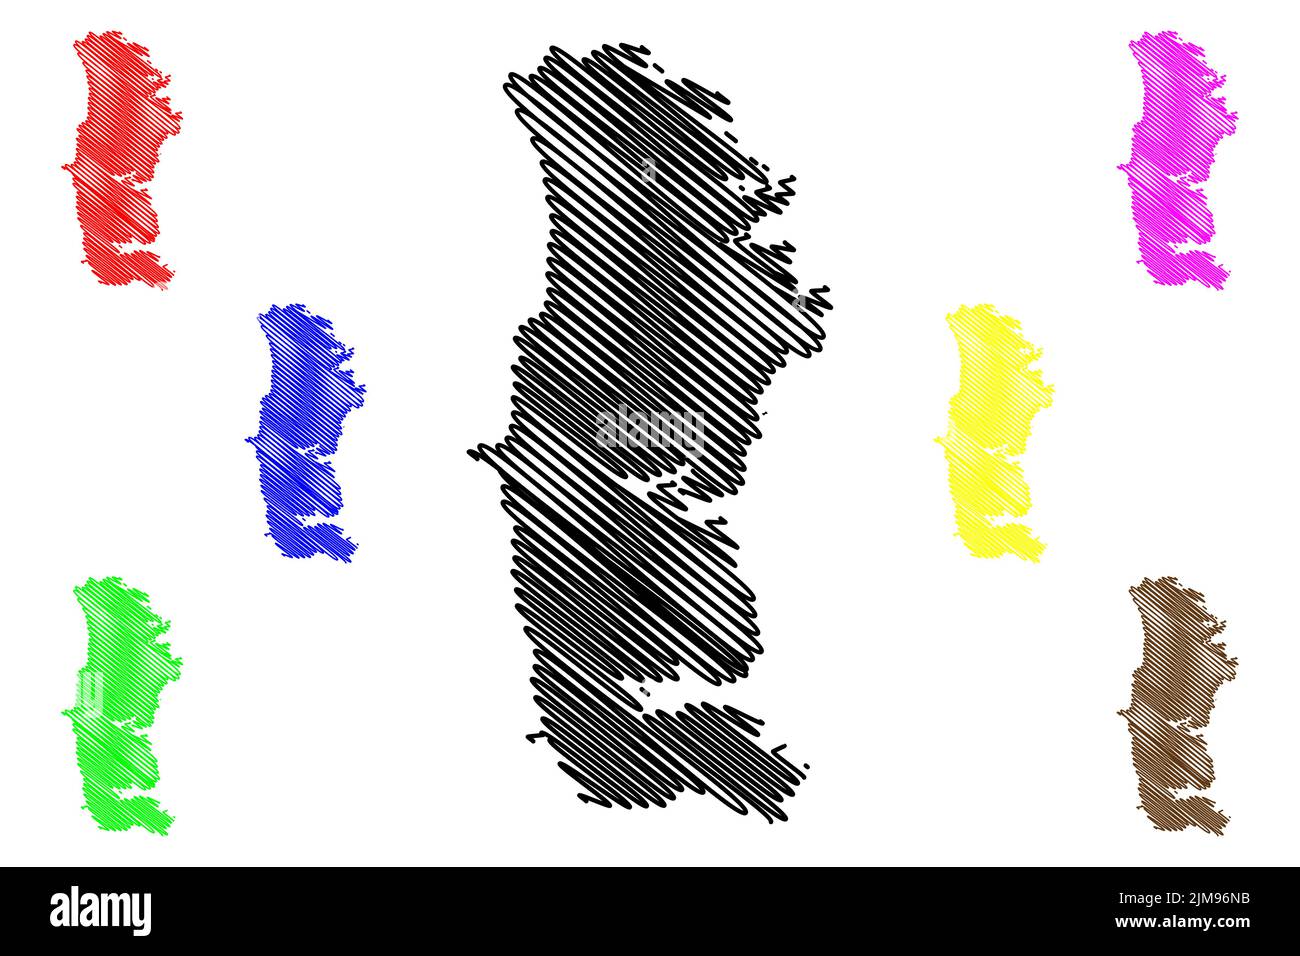 South Uist Island (Vereinigtes Königreich von Großbritannien und Nordirland, Schottland, Äußere Hebriden) Kartenvektordarstellung, Scribble Sketch Isle of so Stock Vektor